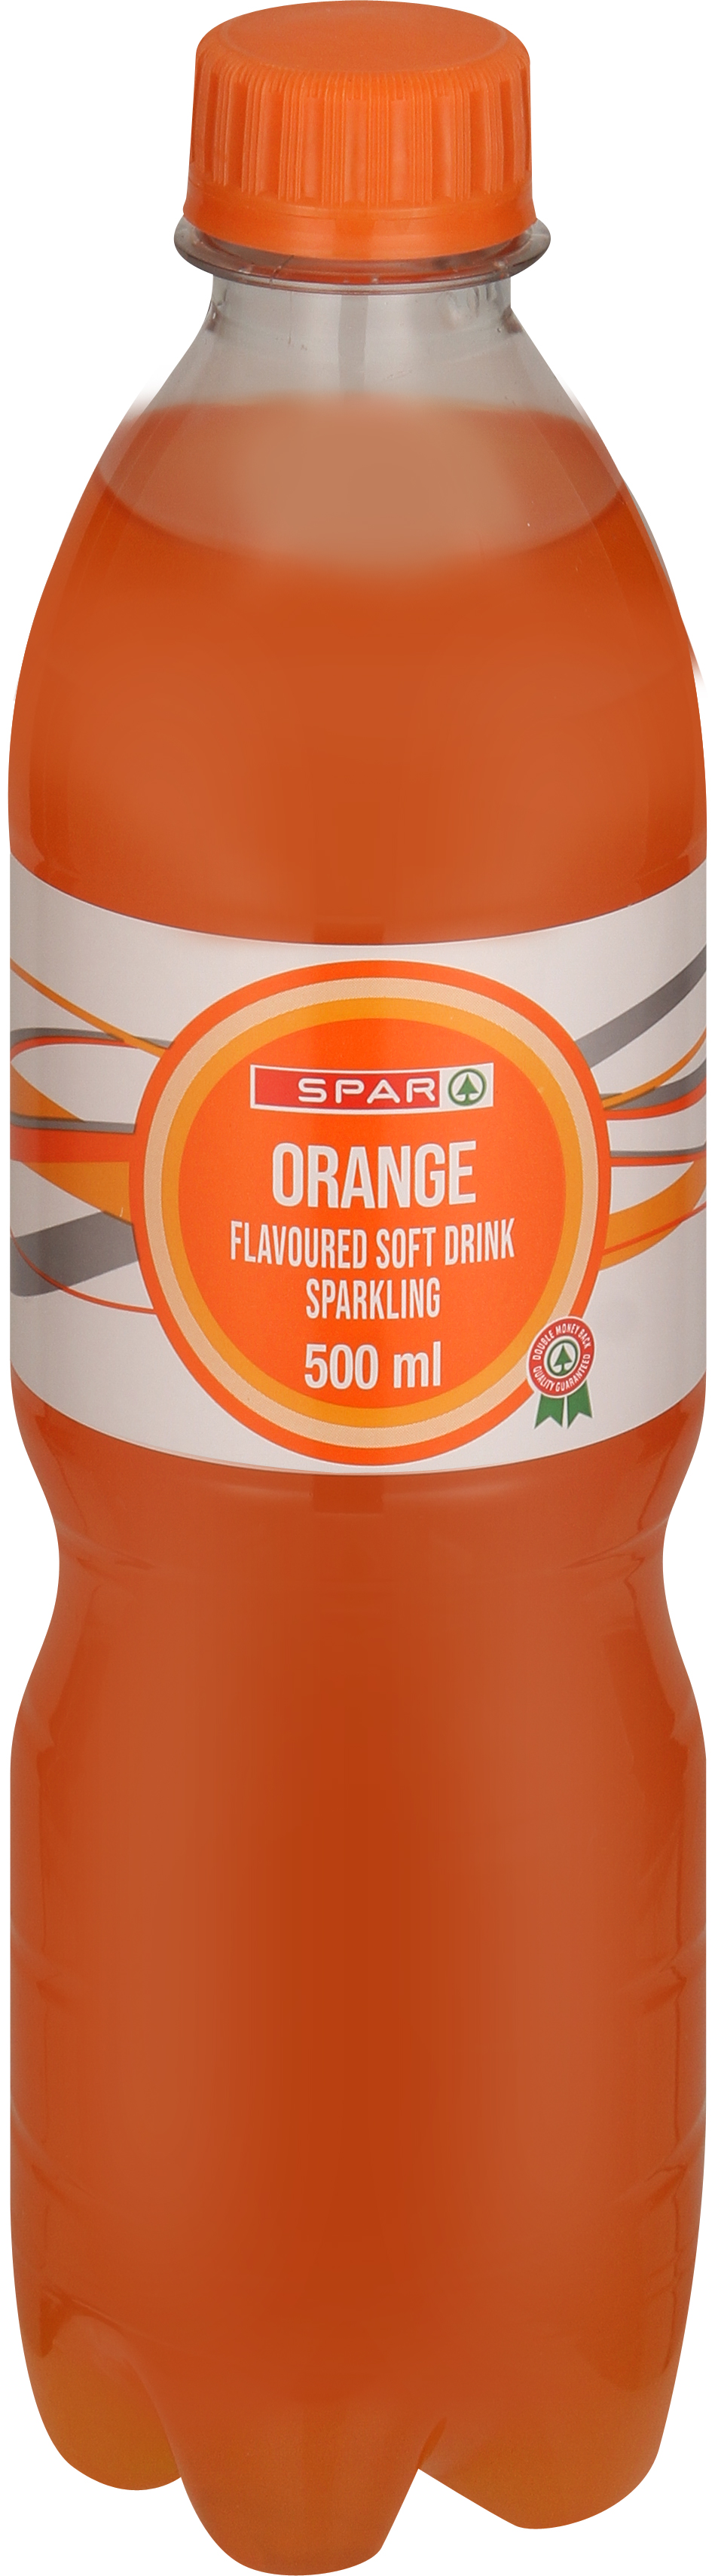 carbonated soft drink orange flavoured